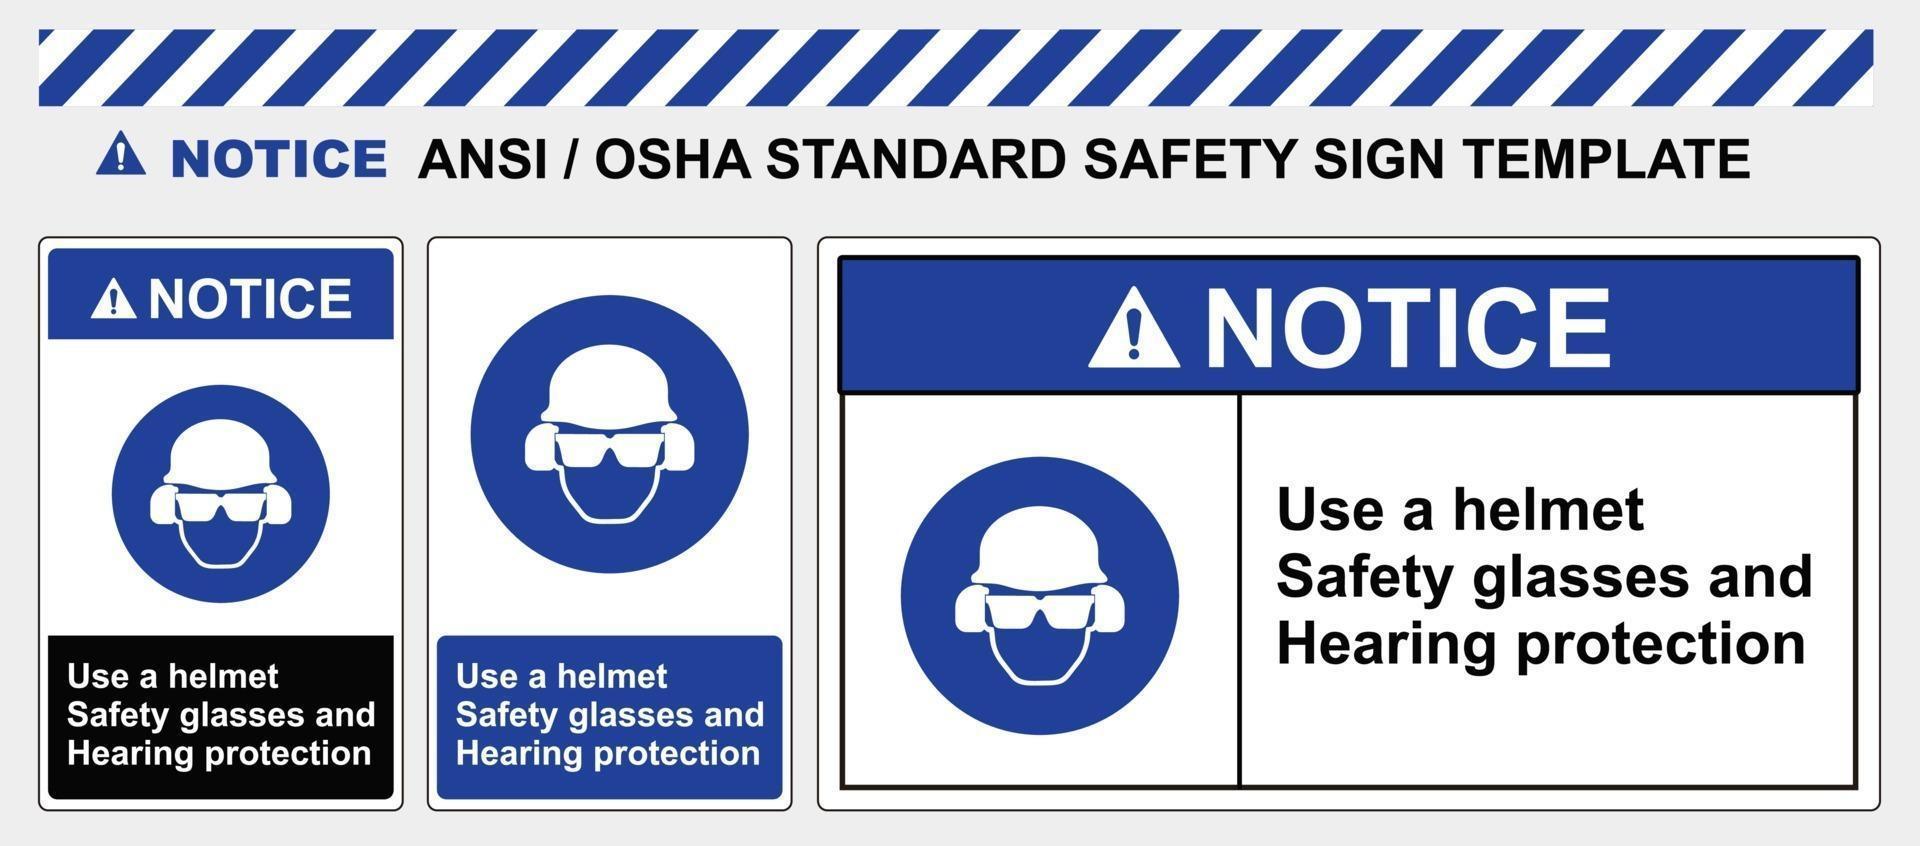 plantilla de señal de seguridad use cascos gafas de seguridad y protección auditiva, estándar ansi y osha vector